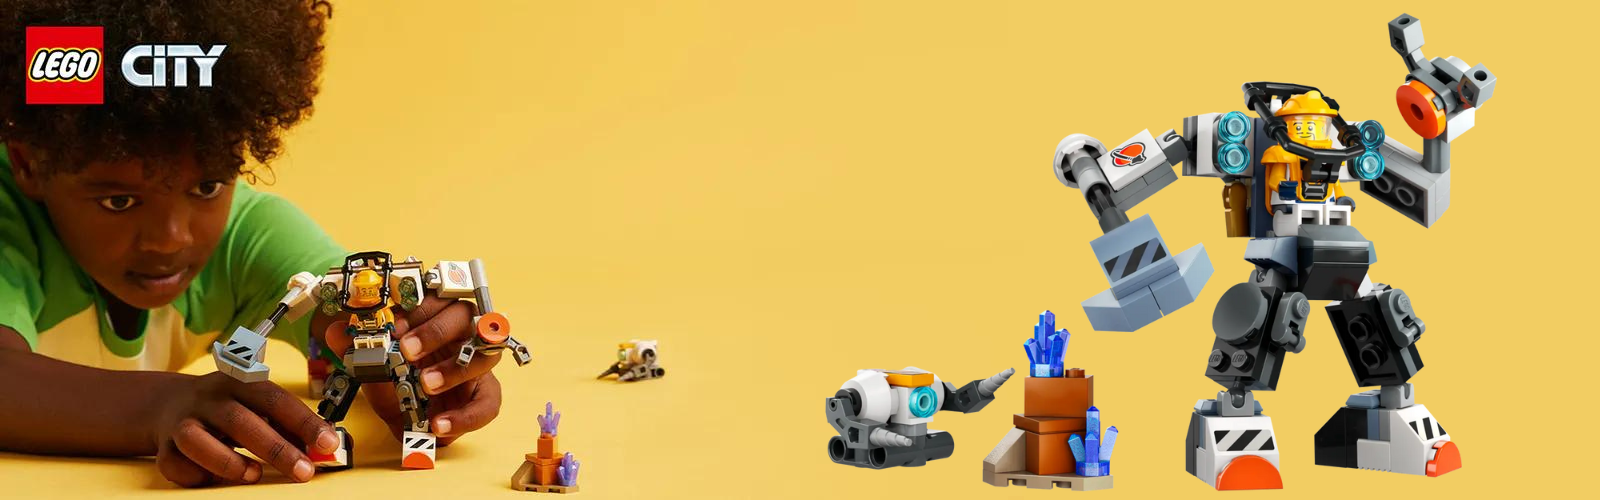 Robot spatial de constructii, +6 ani, 60428, Lego City